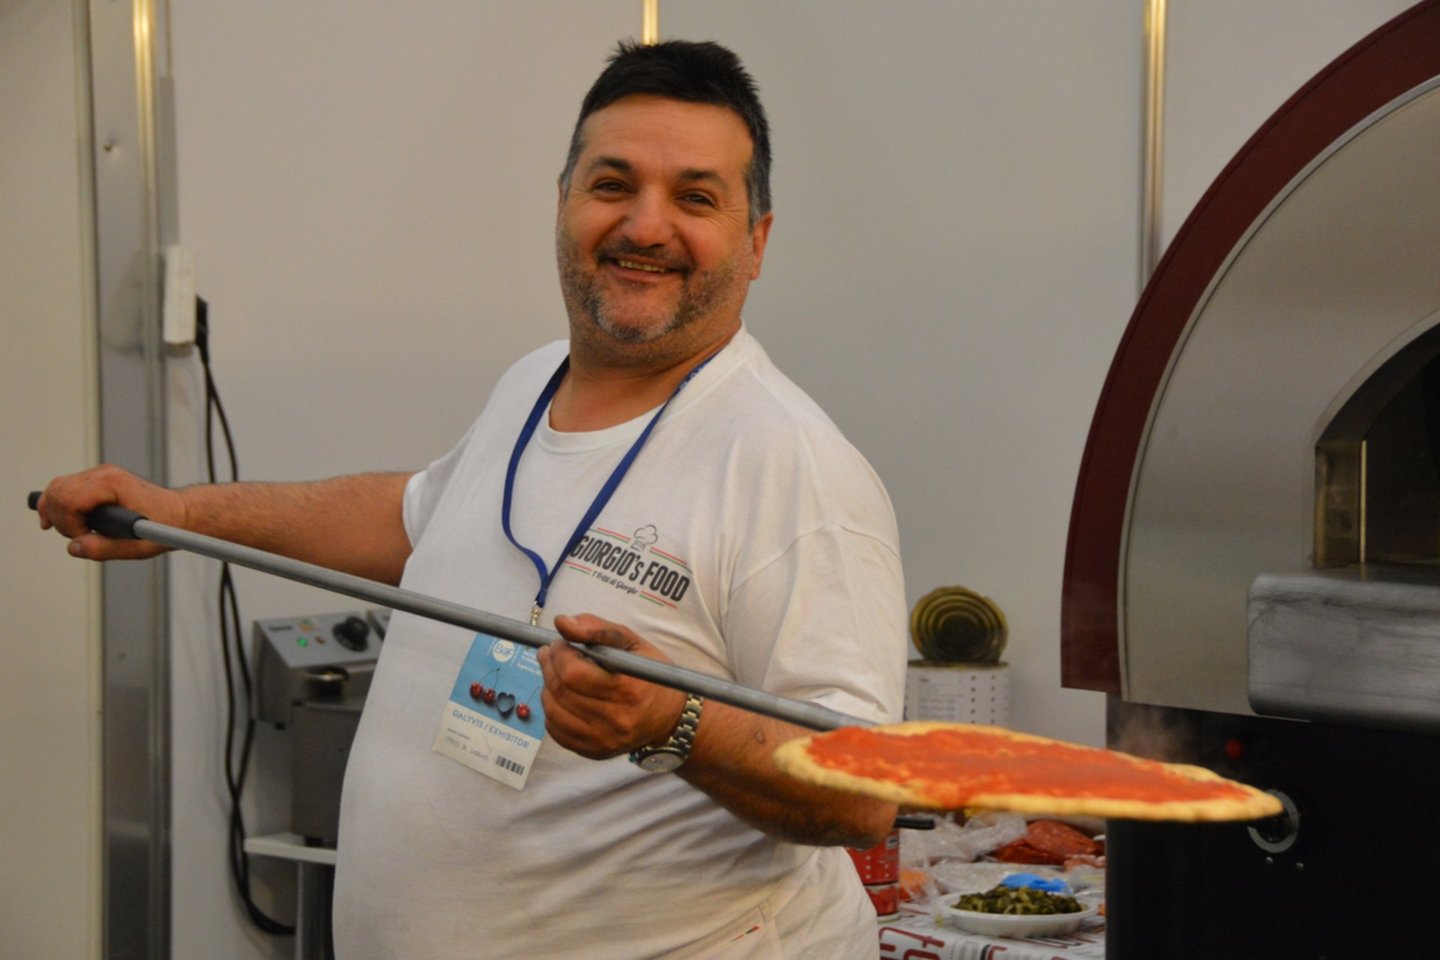  Cassiani Giorgio pristatys ilgo brandinimo picų pagrindus, taip pat pamokys, kaip greitai išsikepti sveiką picą pagal aukščiausius skonio ir sveikatingumo standartus. <br> Organizatorių nuotr.